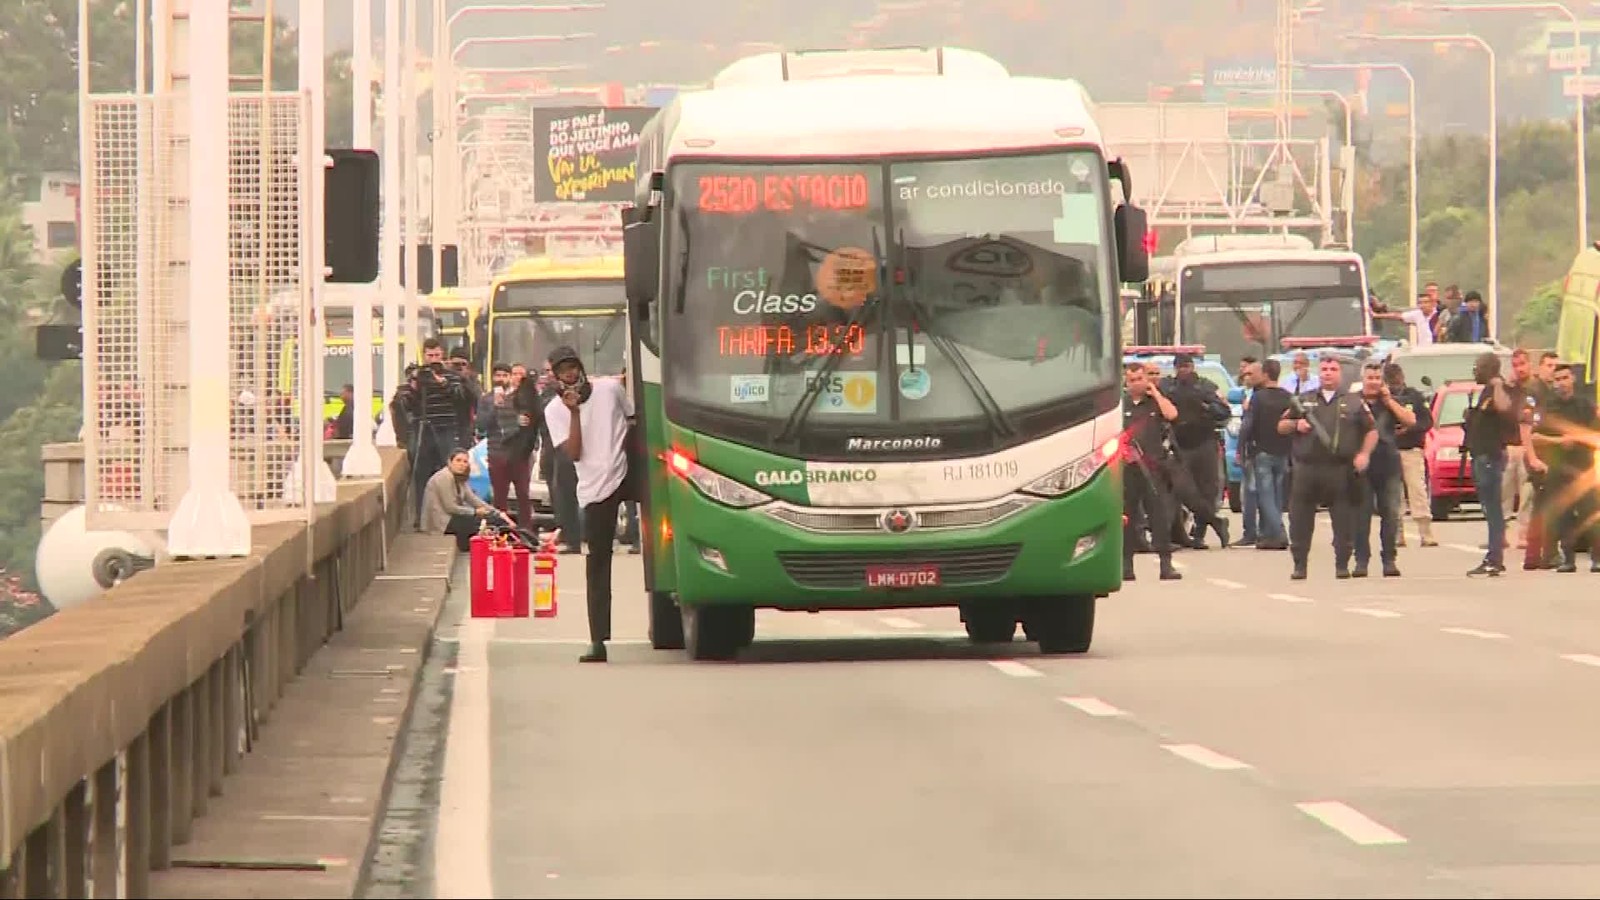 Sequestrador mantém reféns dentro de ônibus em Niterói